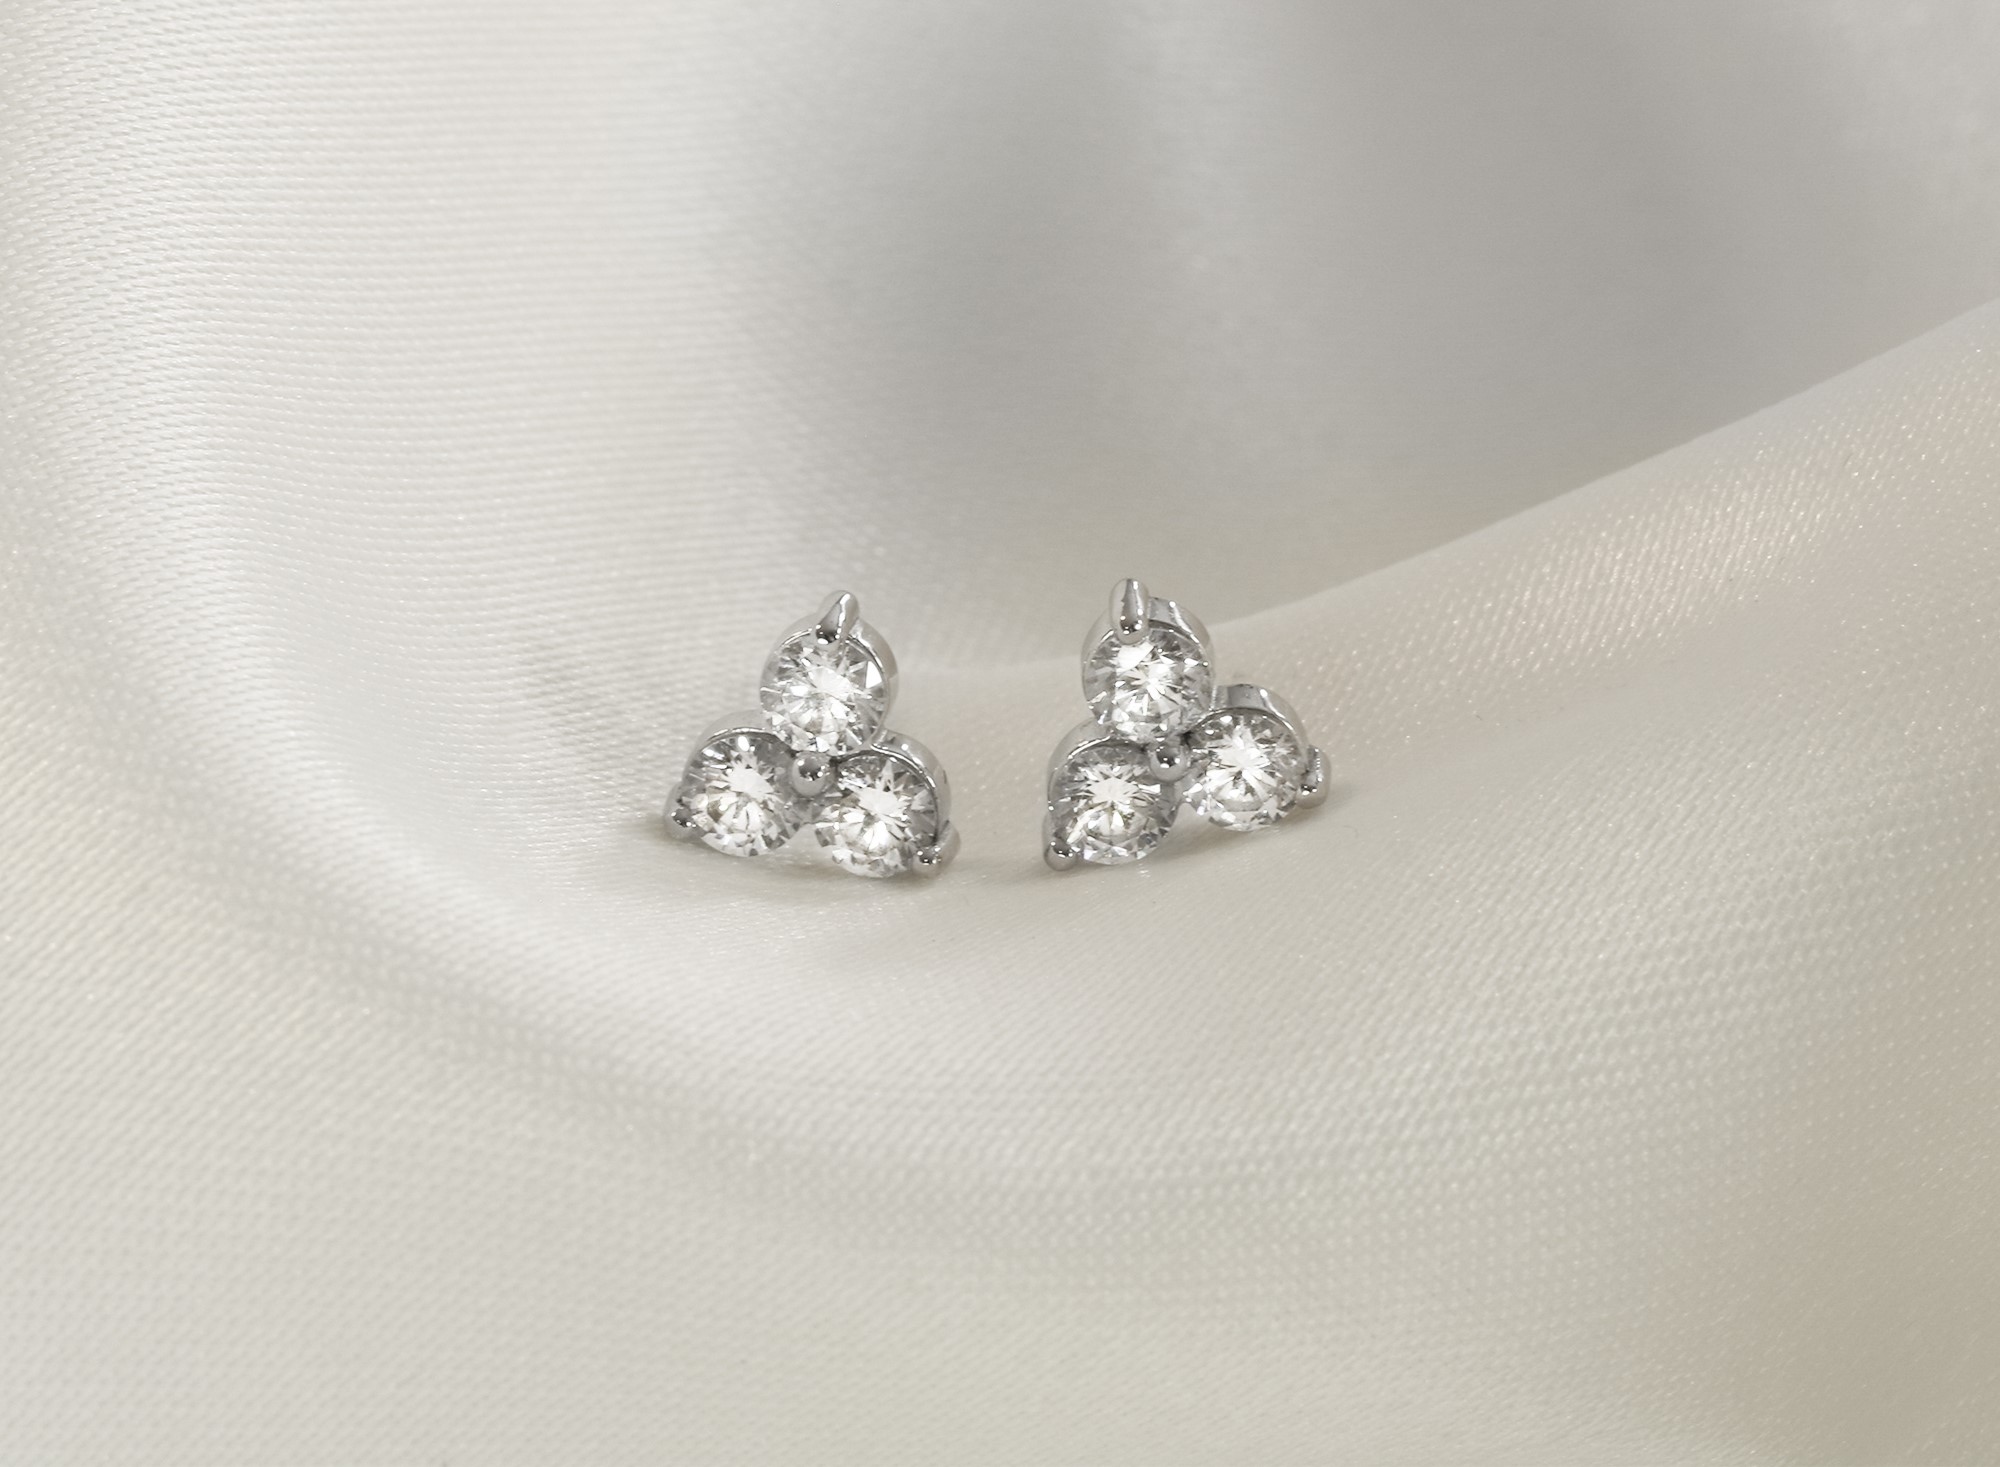 Boucles d’oreilles avec trois diamants : la symbolique trilogie